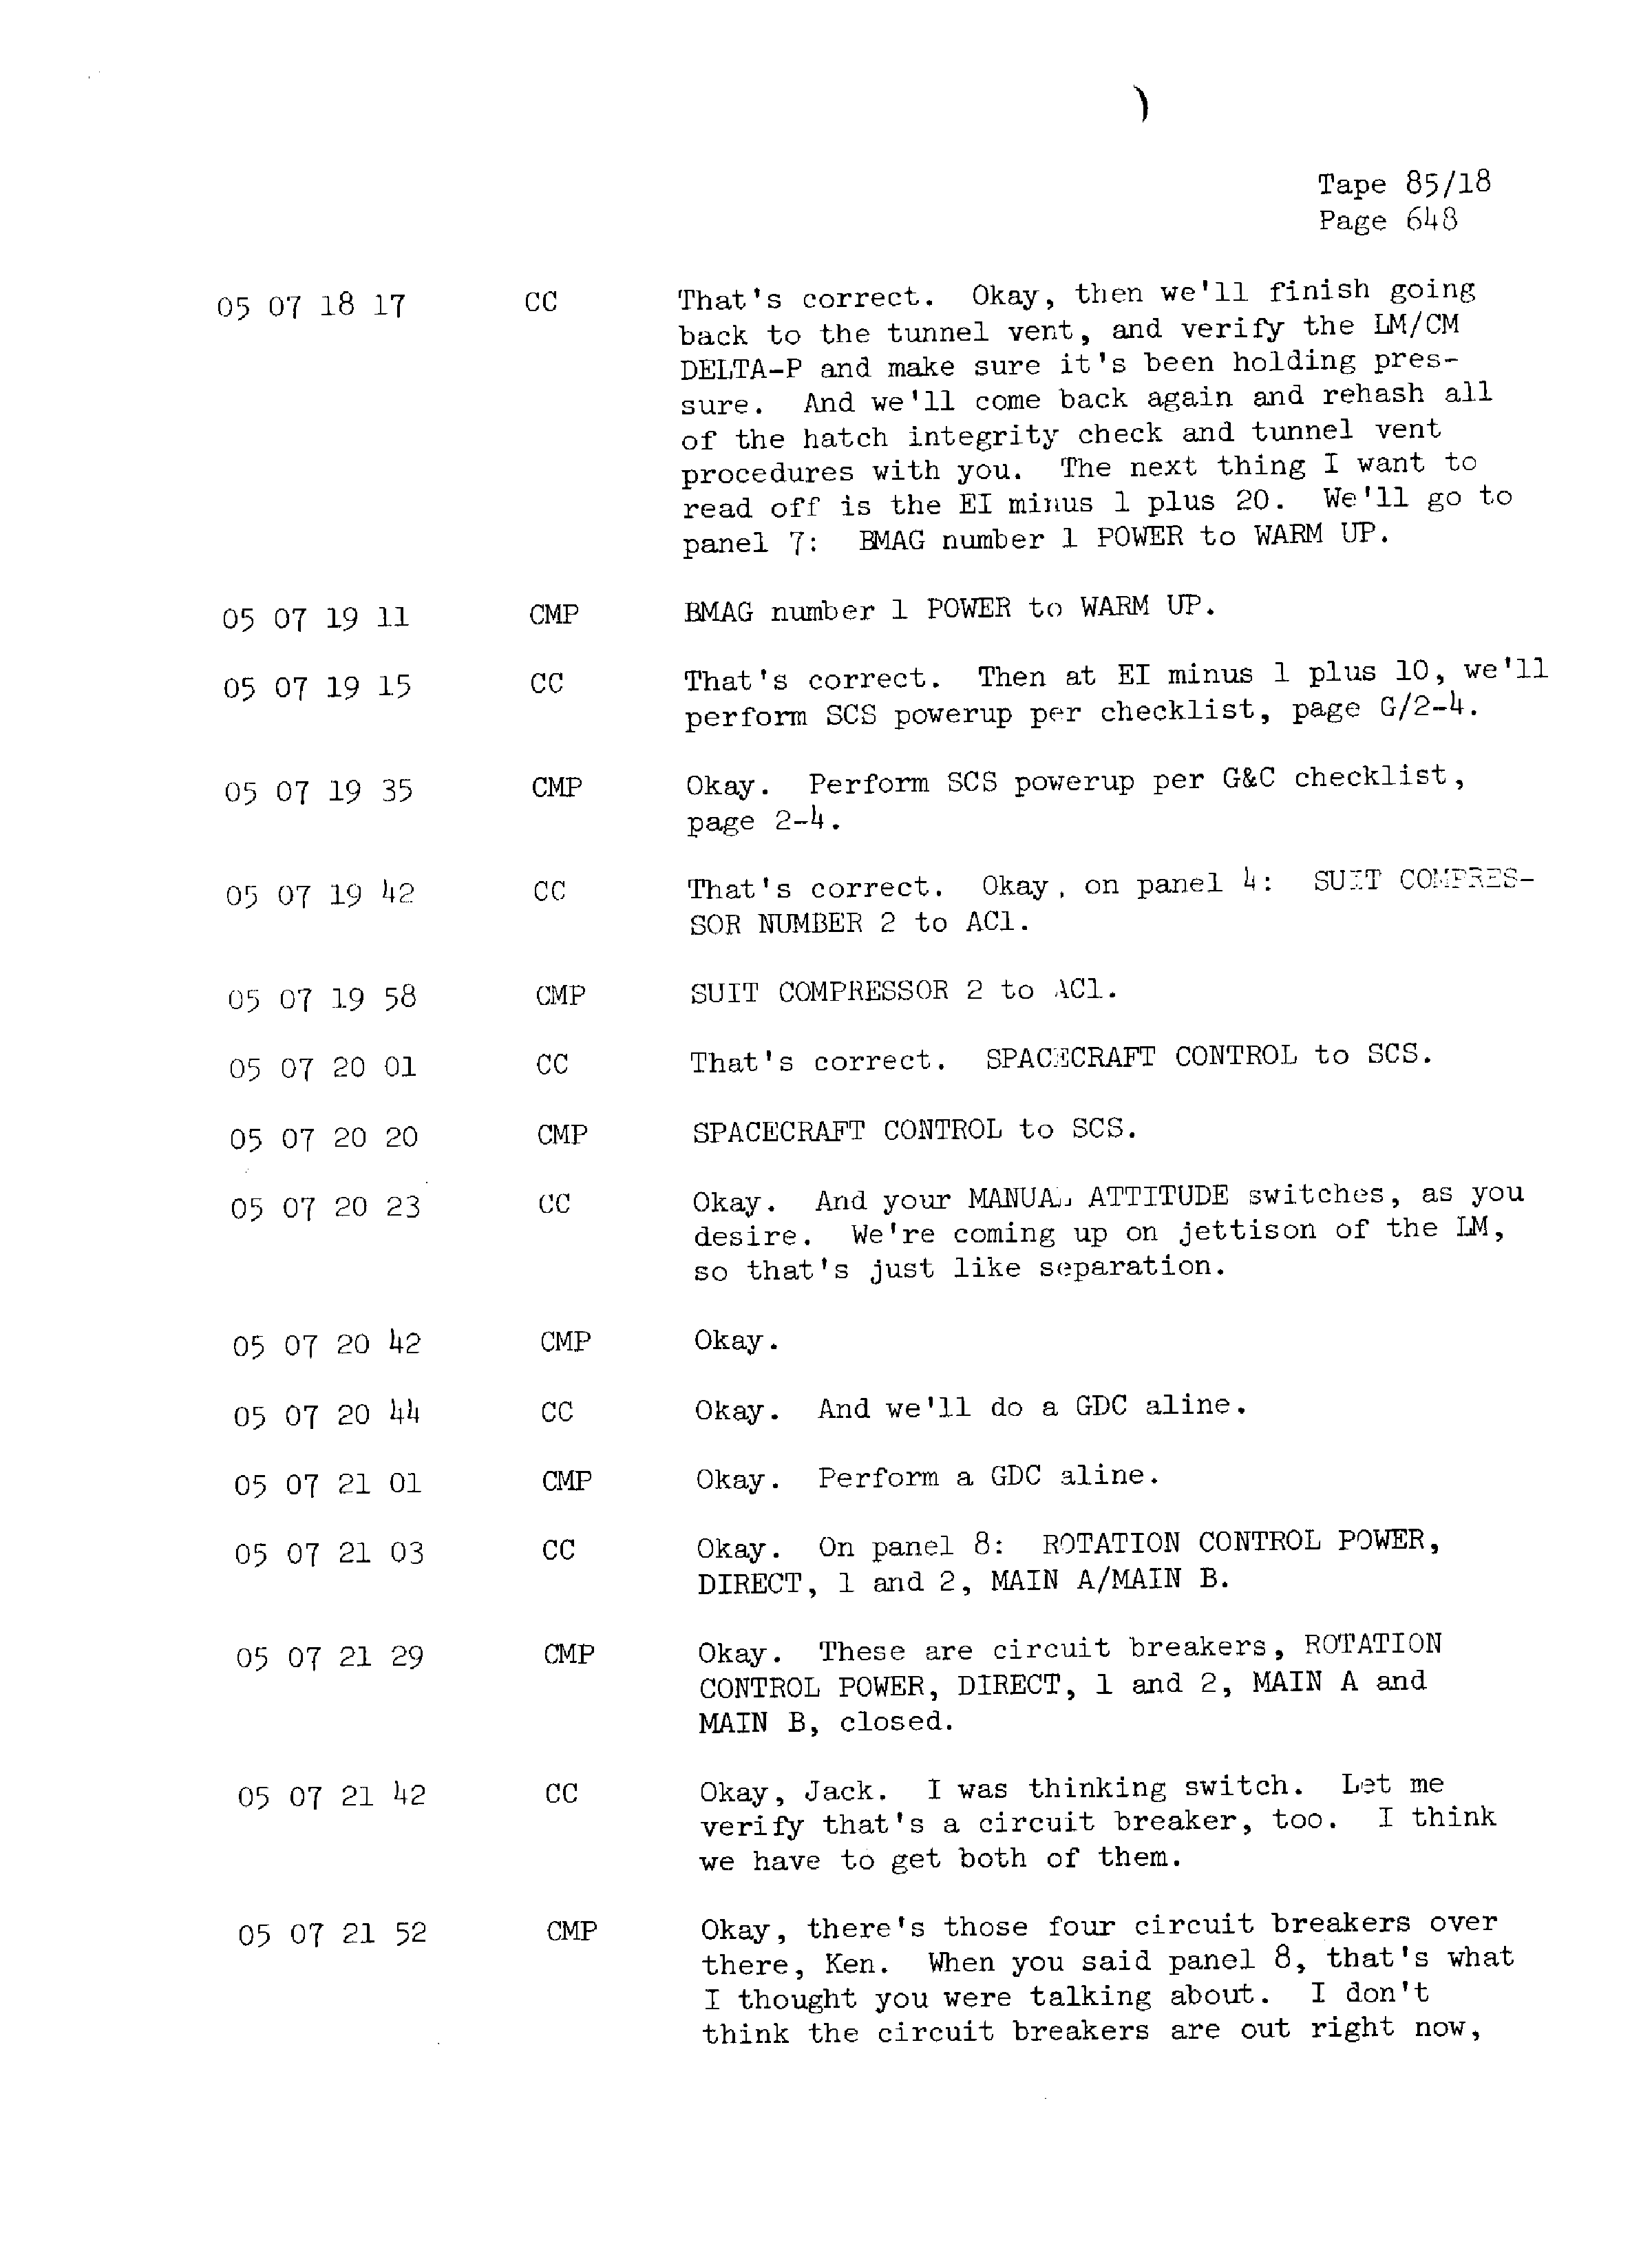 Page 655 of Apollo 13’s original transcript